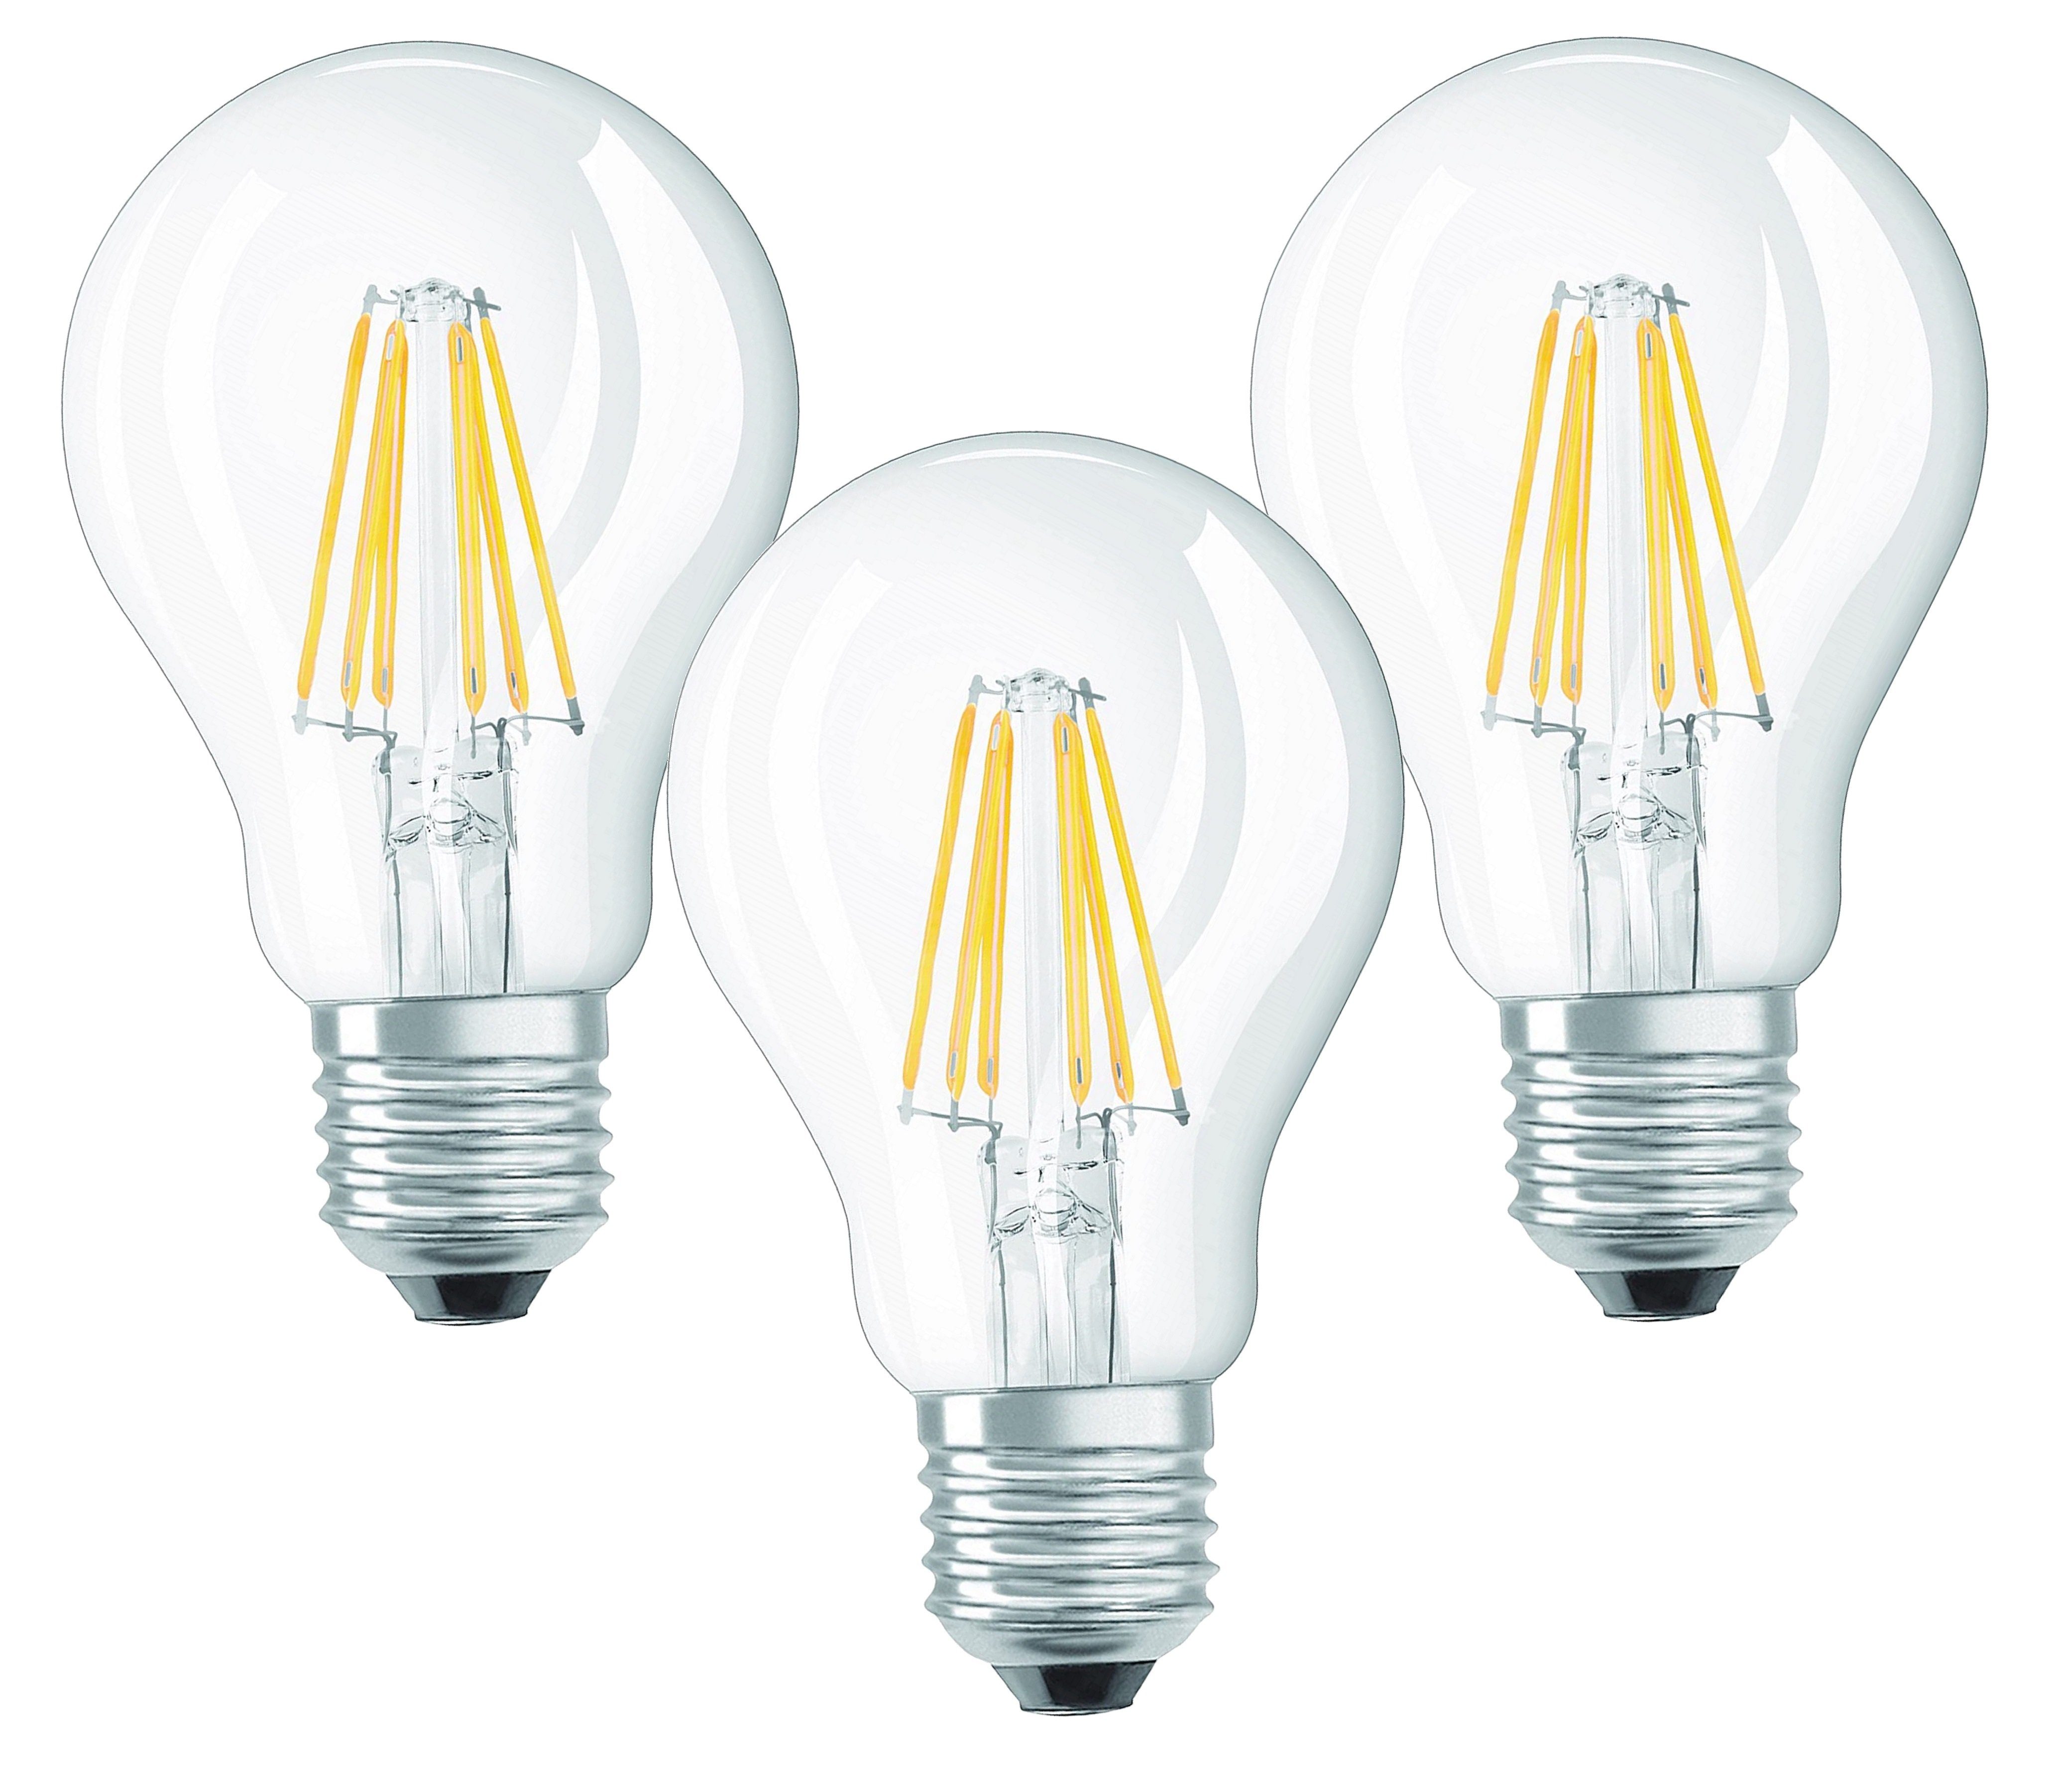 TRANGO LED-Leuchtmittel, 3er Pack E27001-3 LED Filament Birne 8 Watt 850 Lumen - 2700K warmweiß - Ersatz für 60W Glühlampe - Glühbirne - Birne in Tropfen Form mit E27 Fassung Abstrahlwinkel 360°, 3 St.